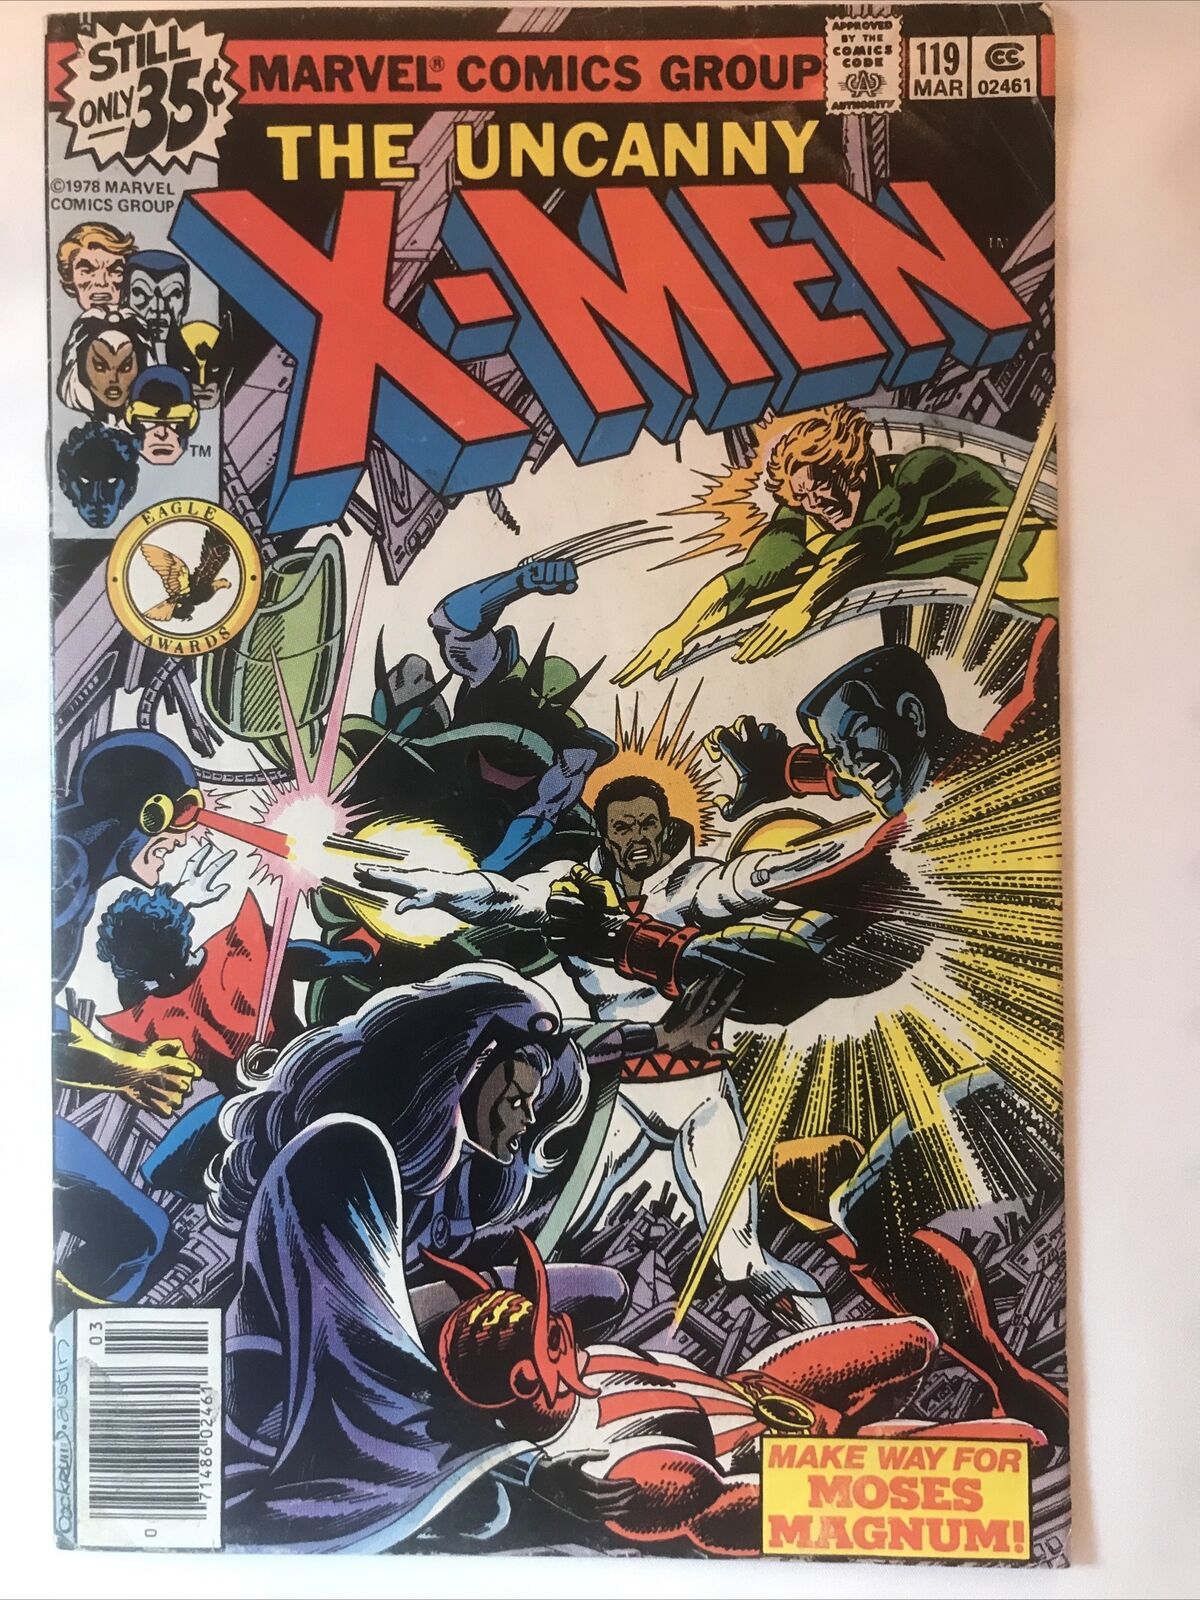 Uncanny X-Men #119 Marvel Comics Bronze Age 1st Print Original 1979 VG